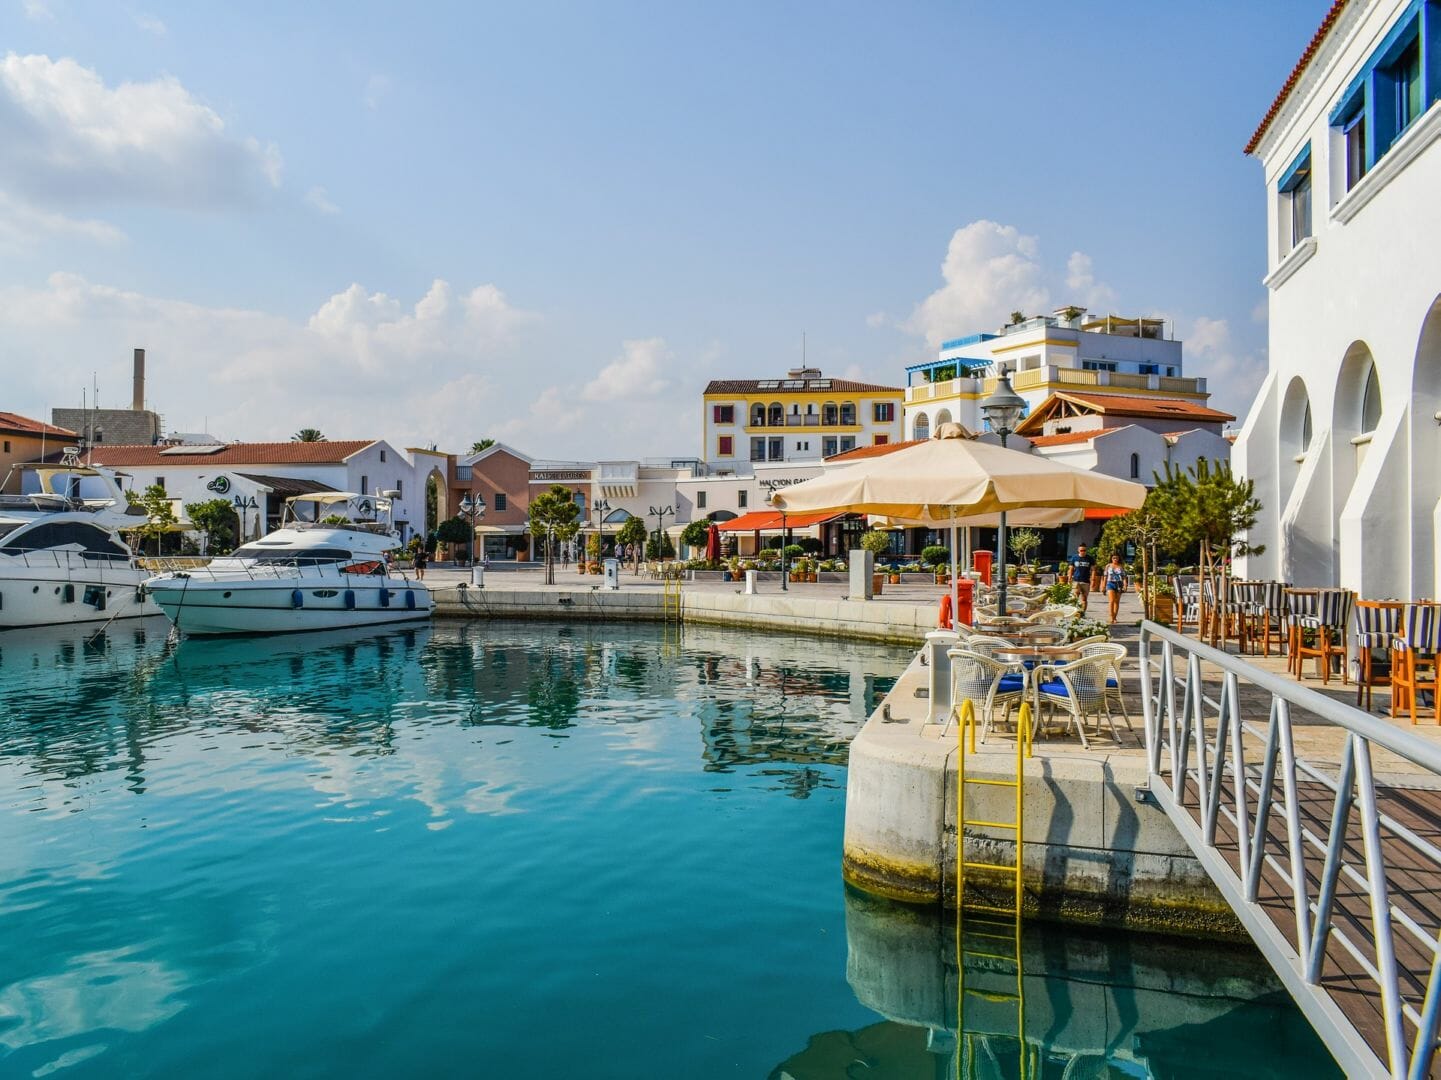 Das ist ein Bild vom Hafen in Limassol. Limassol ist der Ort an dem der Kurs stattfindet.